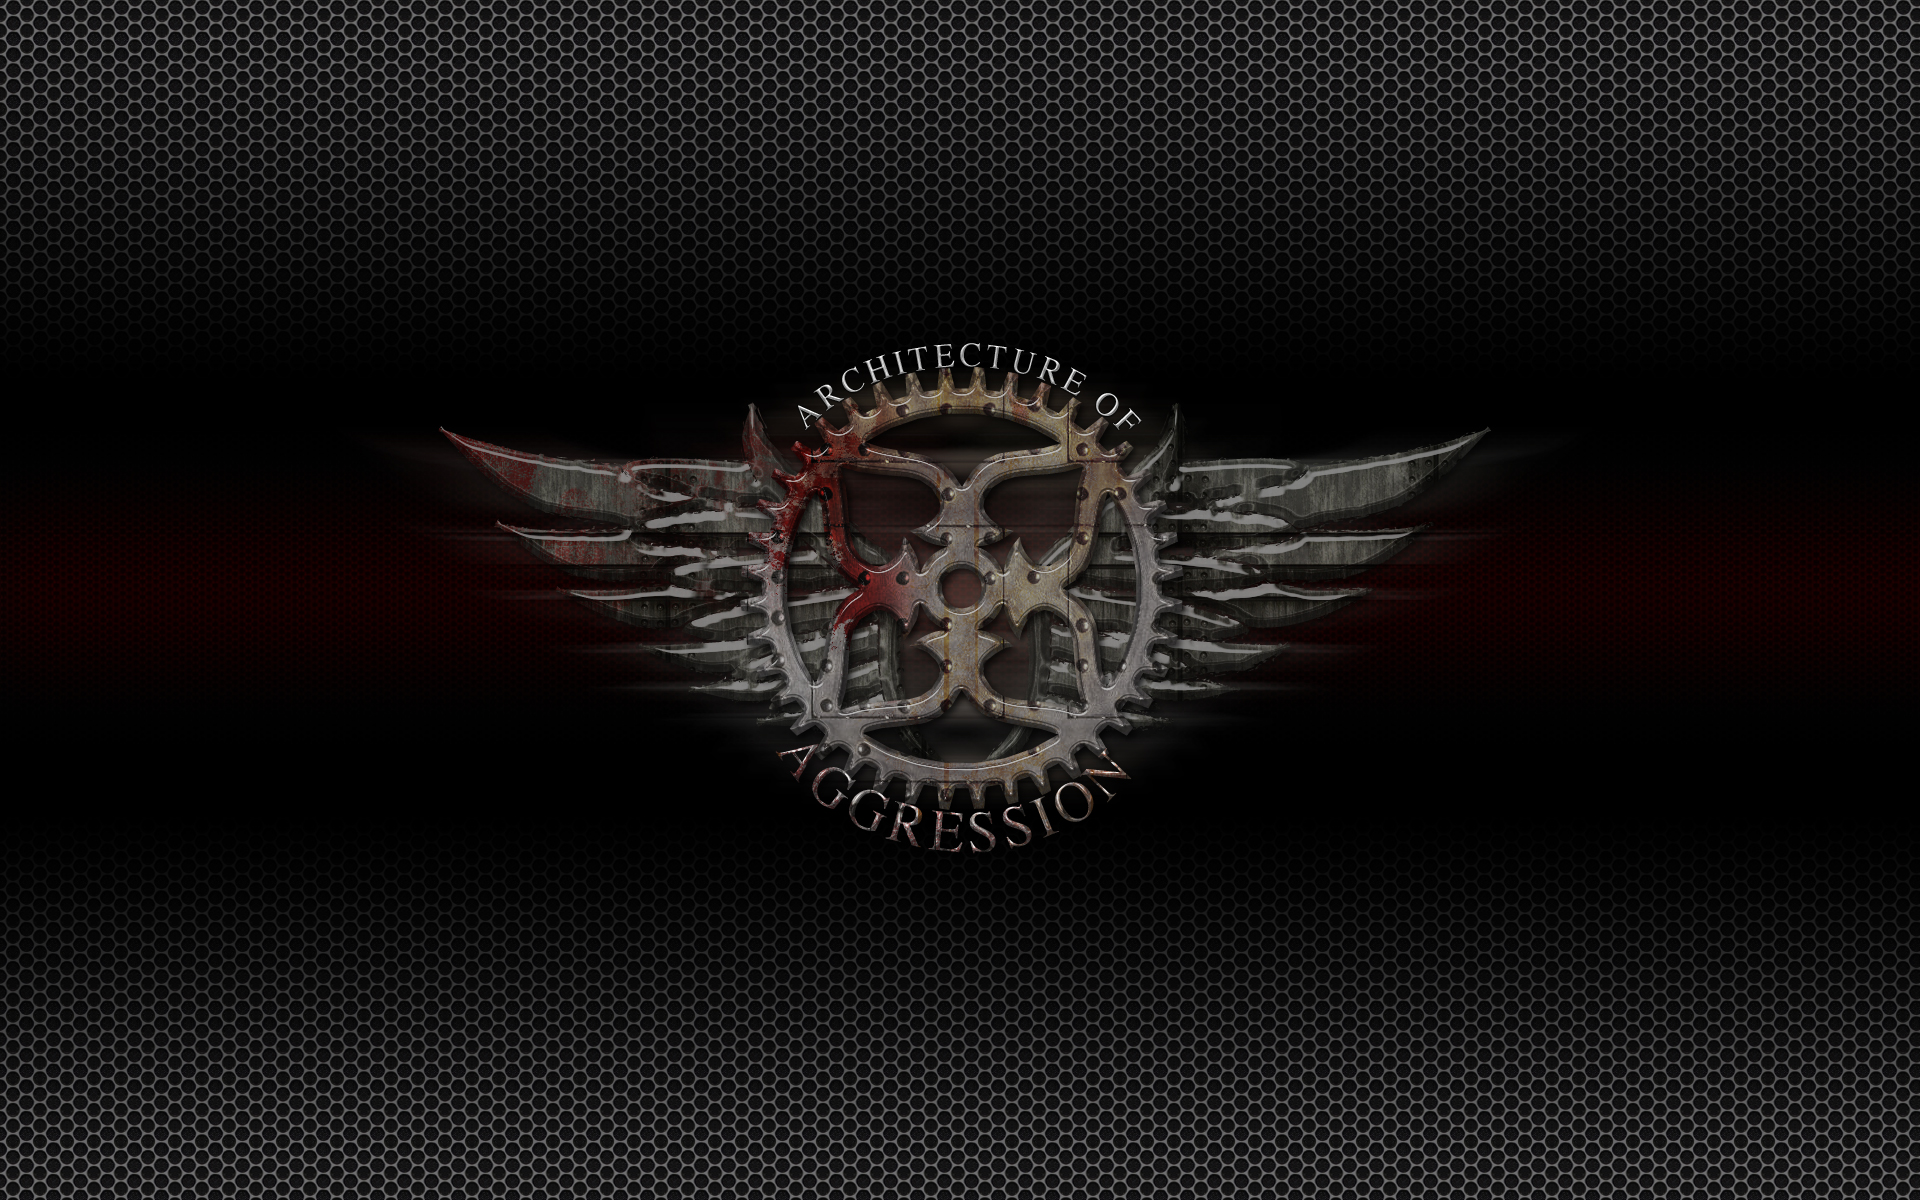 Megadeth Wallpaper Background